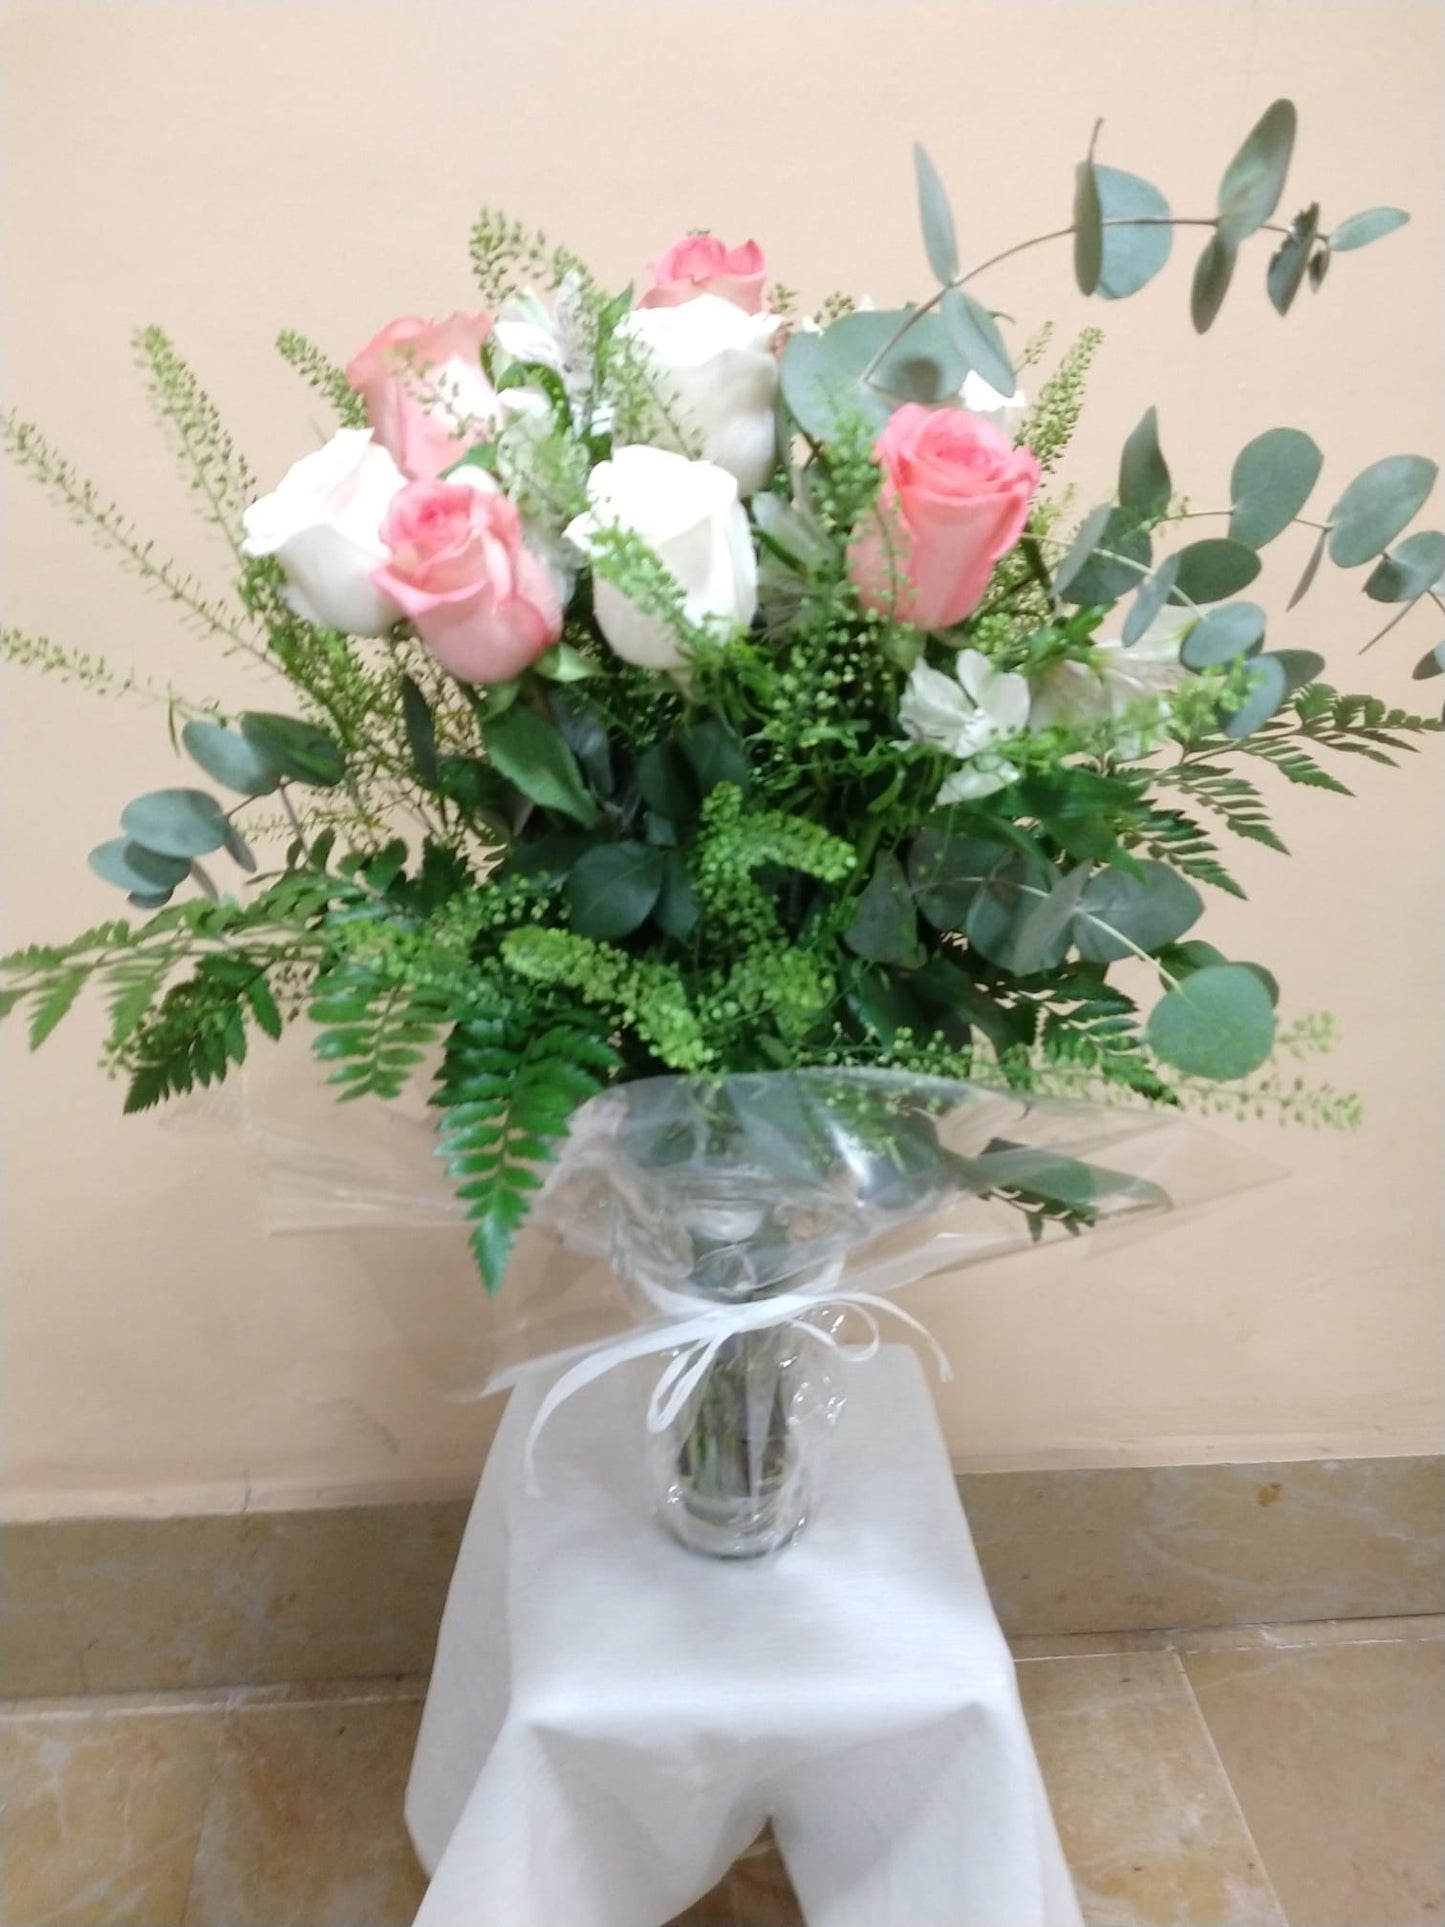 Ramo de rosas blancas y rosas